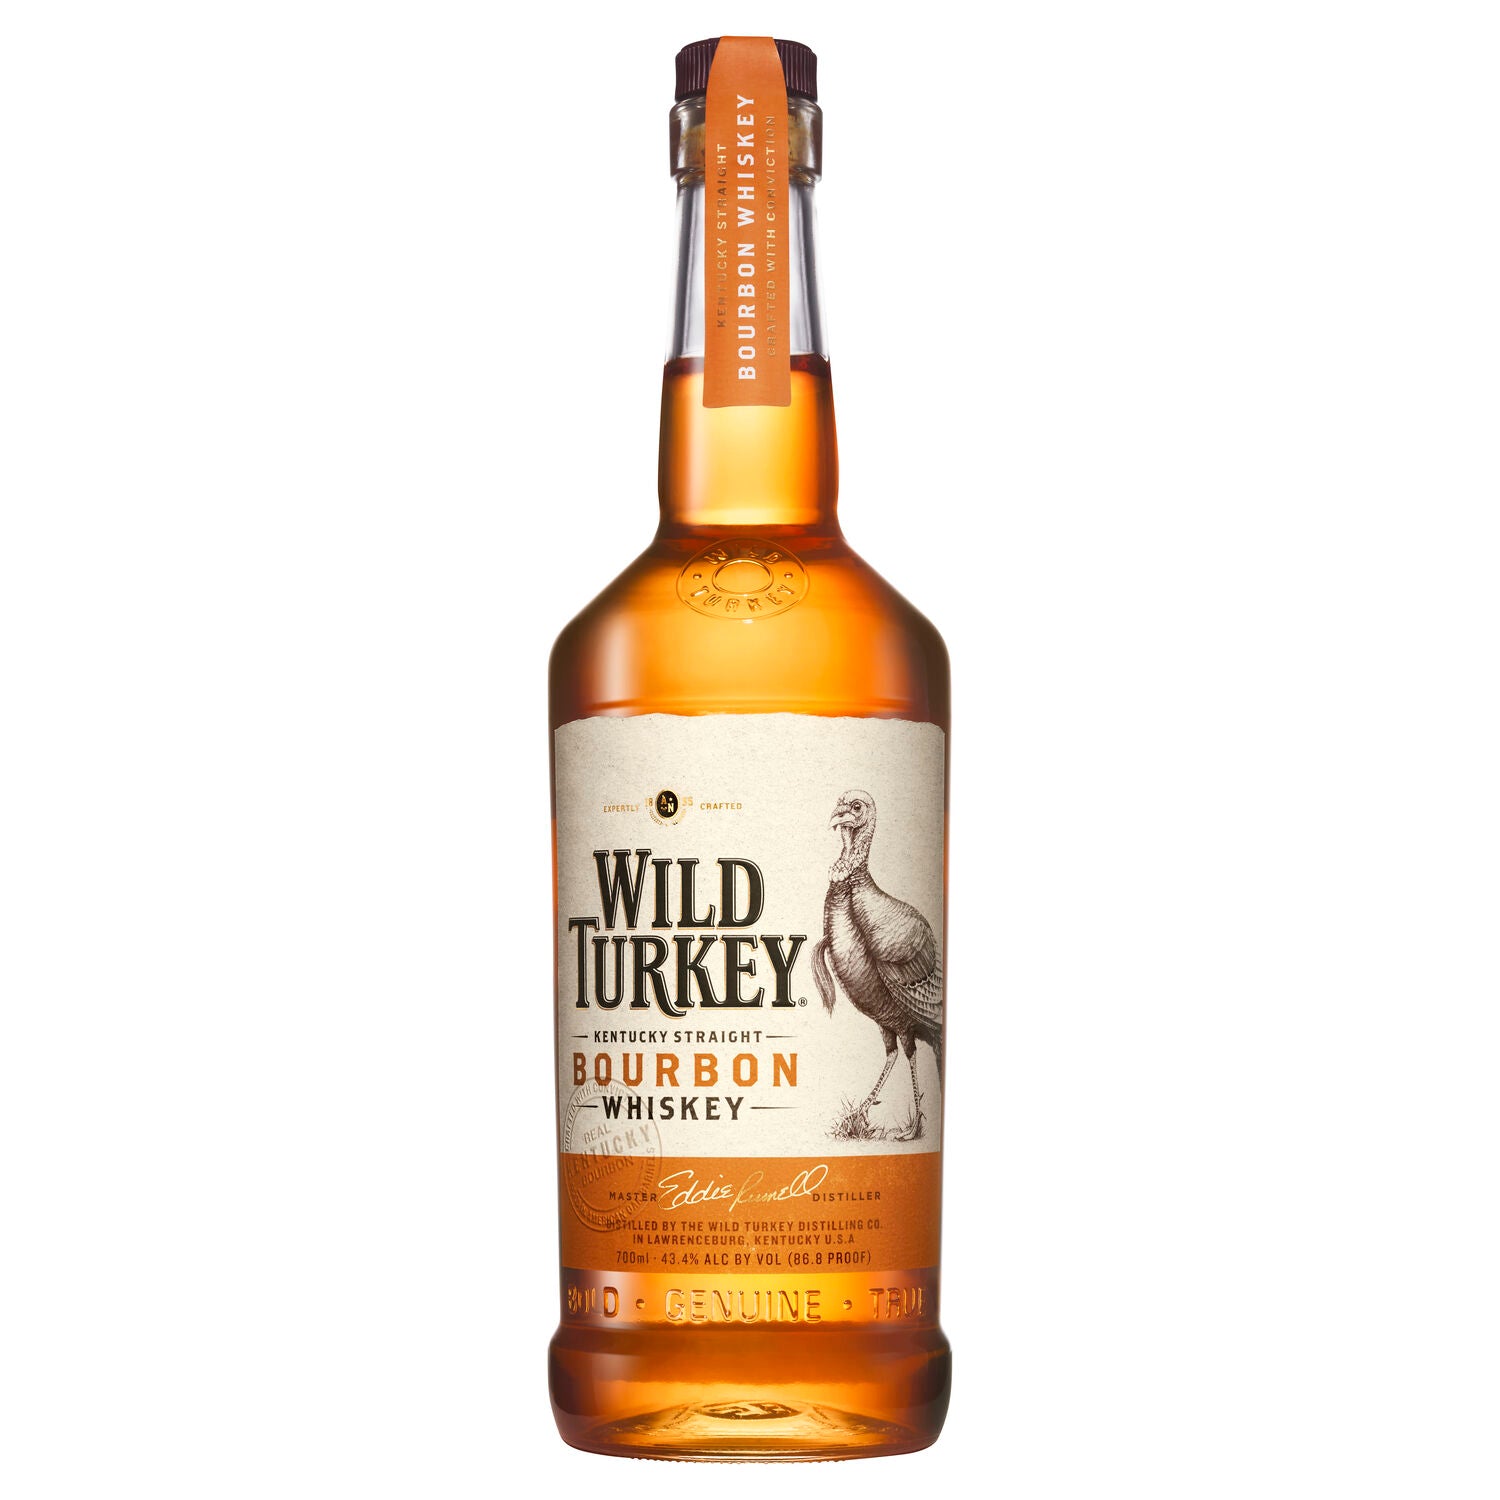 Wild Turkey Kentucky Straight Bourbon Whiskey 700ml